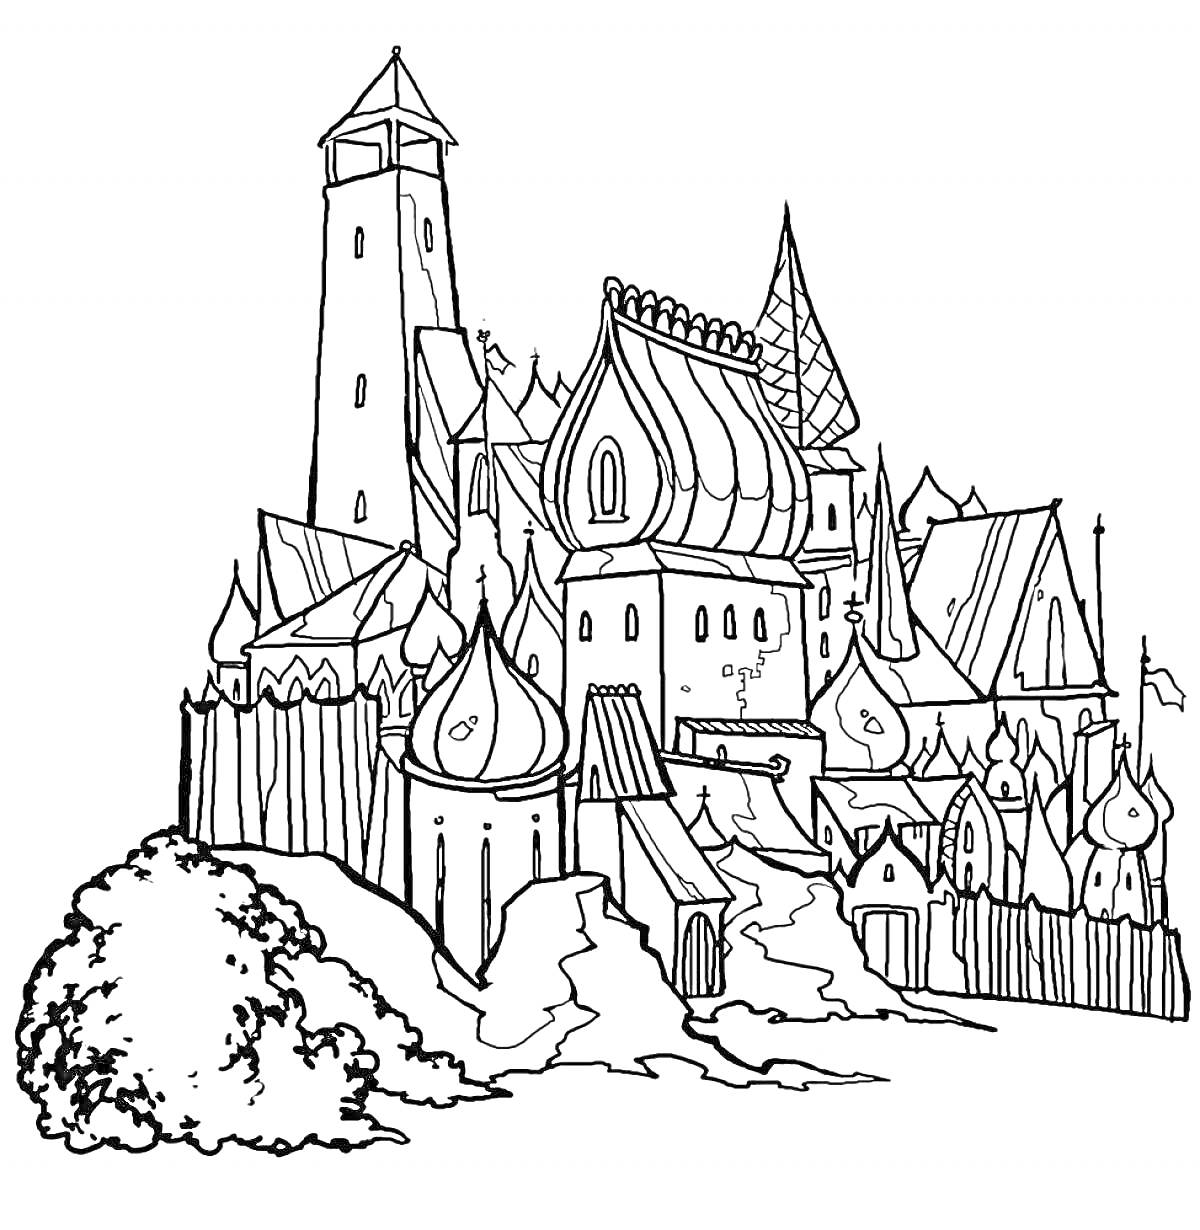 Раскраска Изображение дворца царя Салтана с различными башнями и куполами, окруженного стенами и растительностью на переднем плане